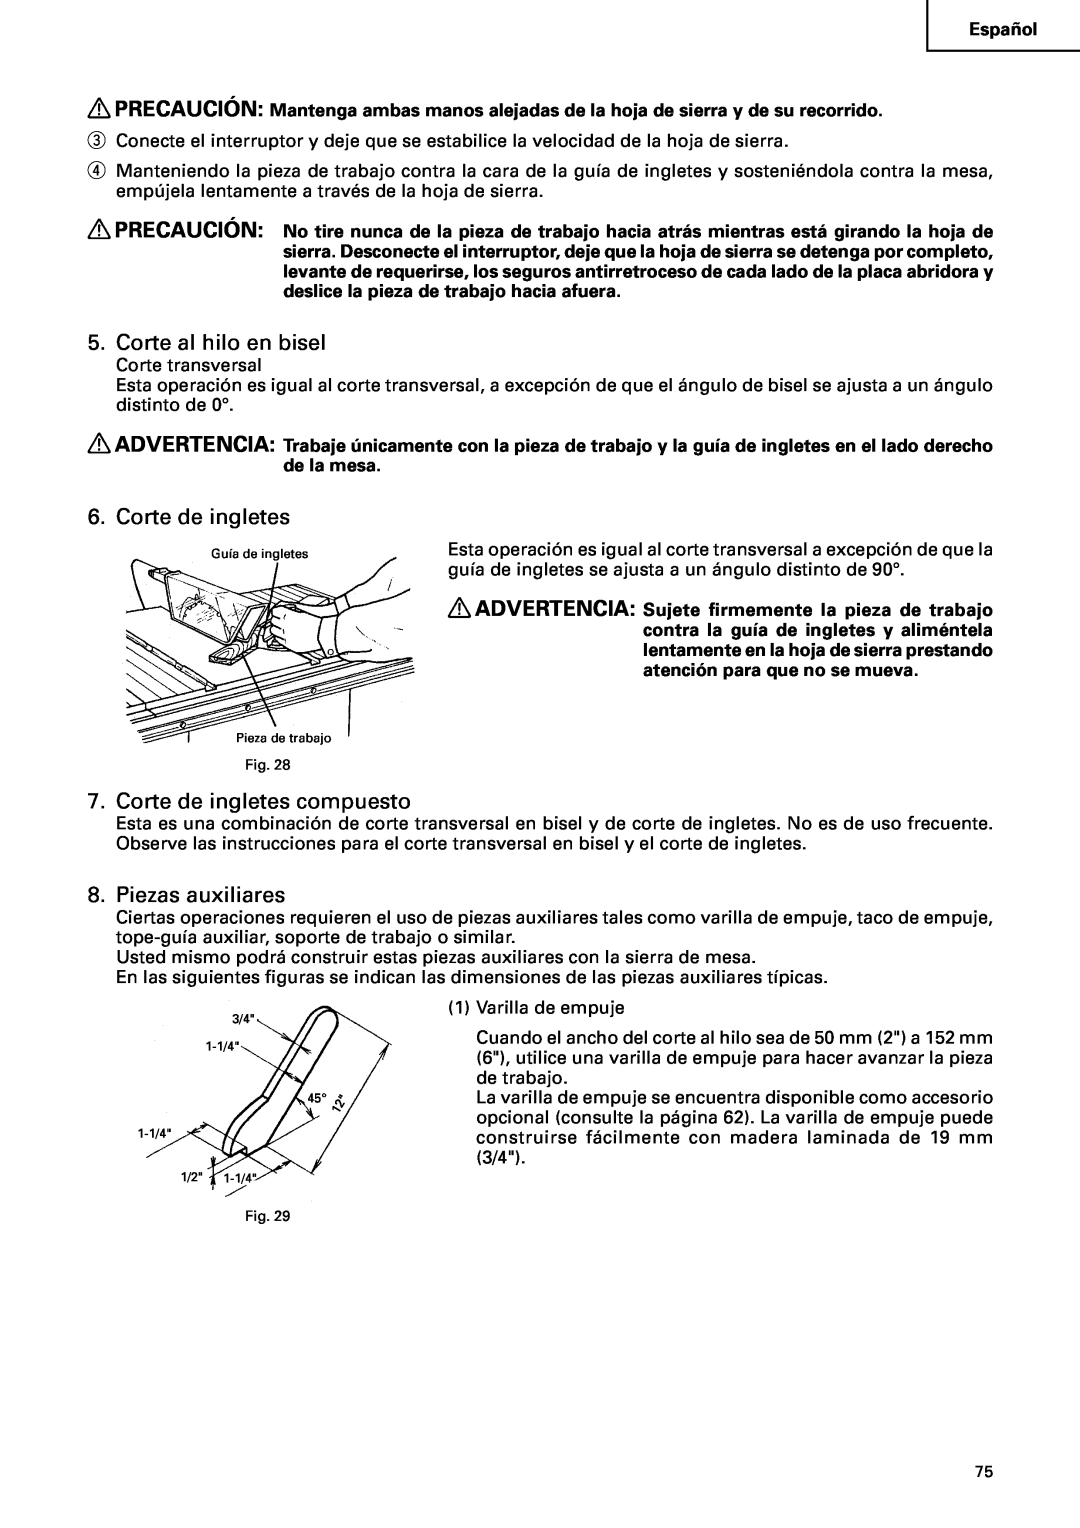 Hitachi C10RA2 instruction manual Corte al hilo en bisel, Corte de ingletes compuesto, Piezas auxiliares 